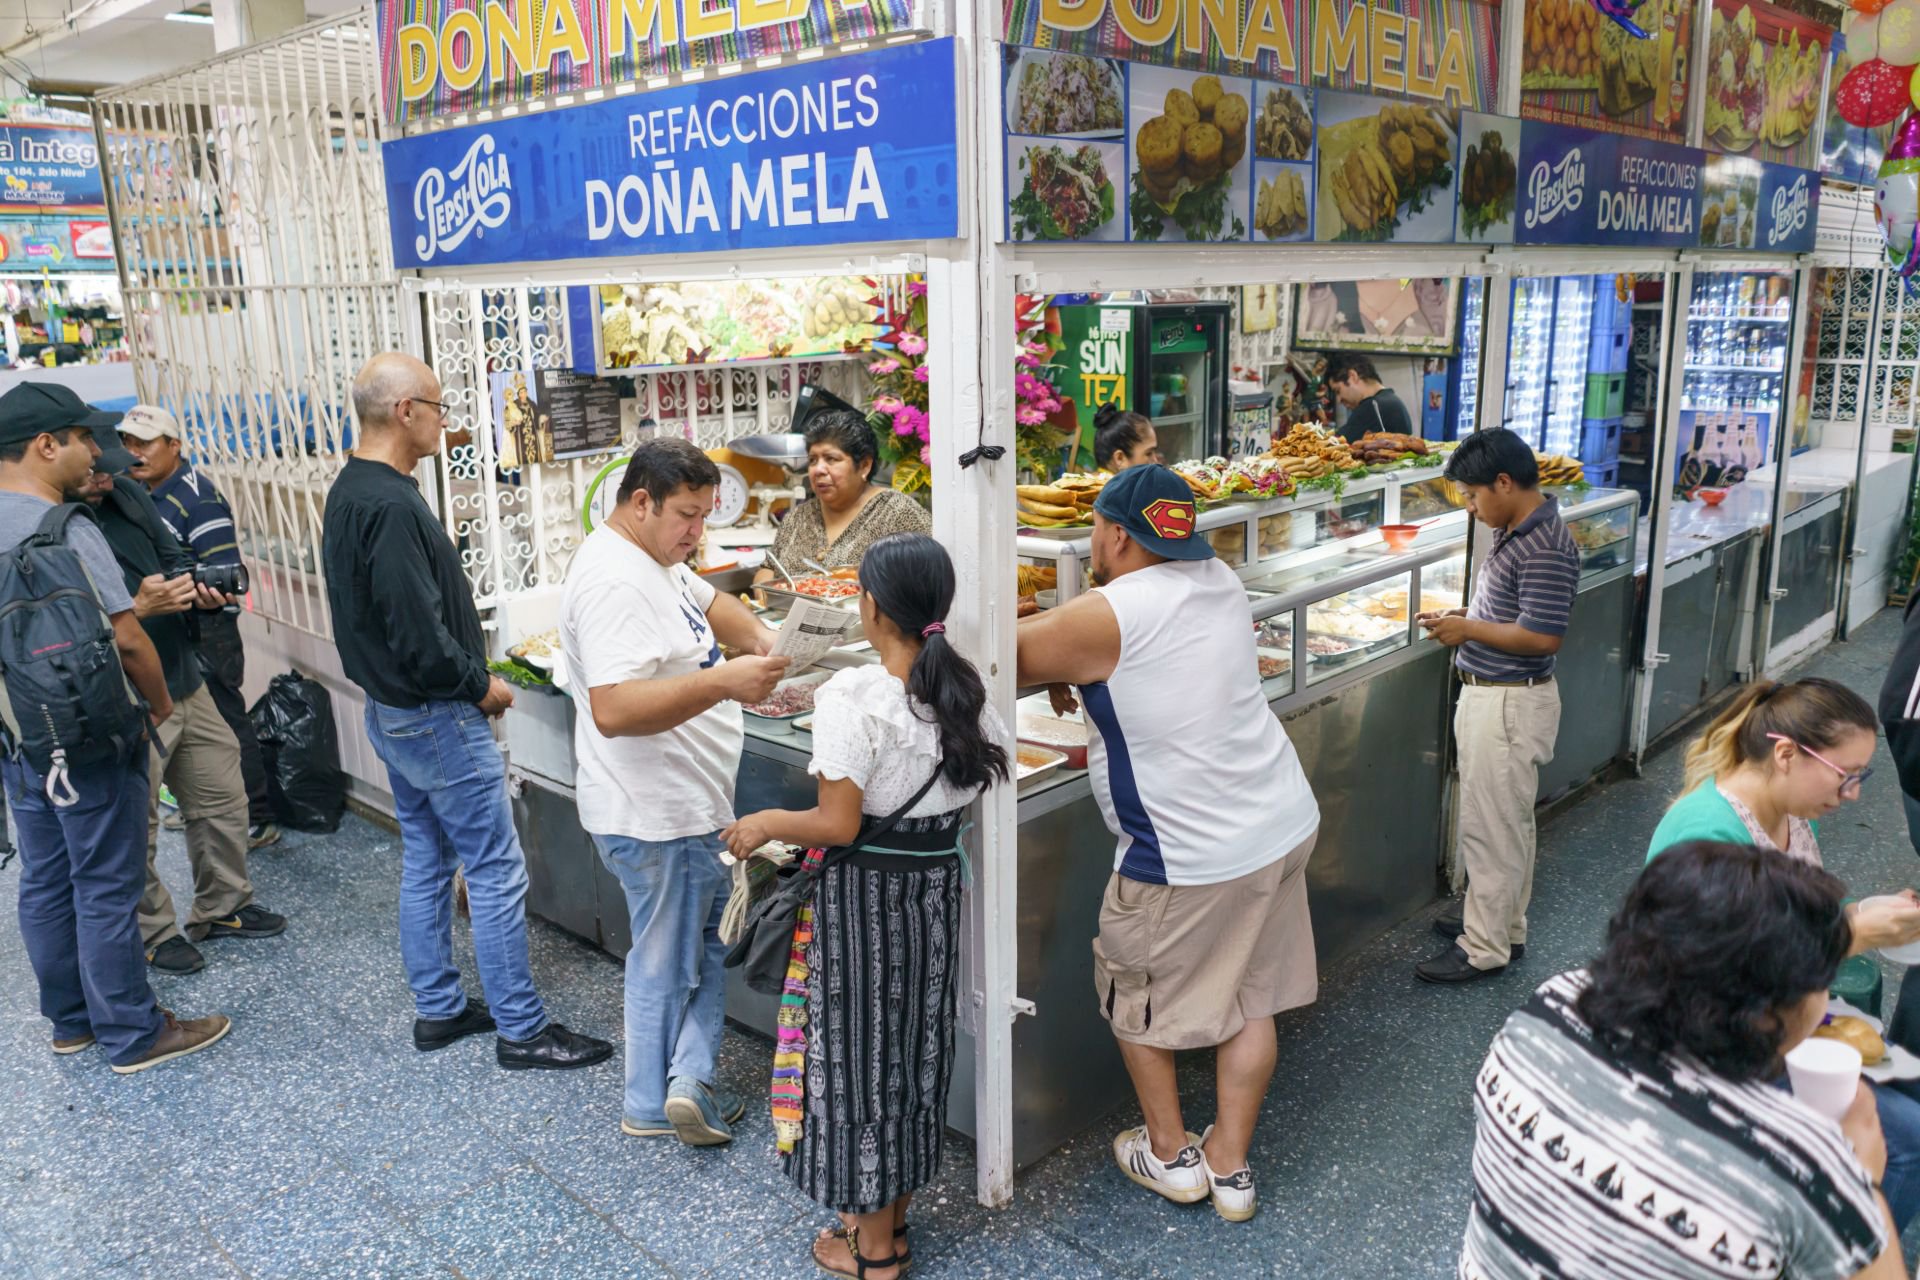 Dona-Mela-Refacciones-Mercado-Central-Zona-1-Guatemala-17.jpg